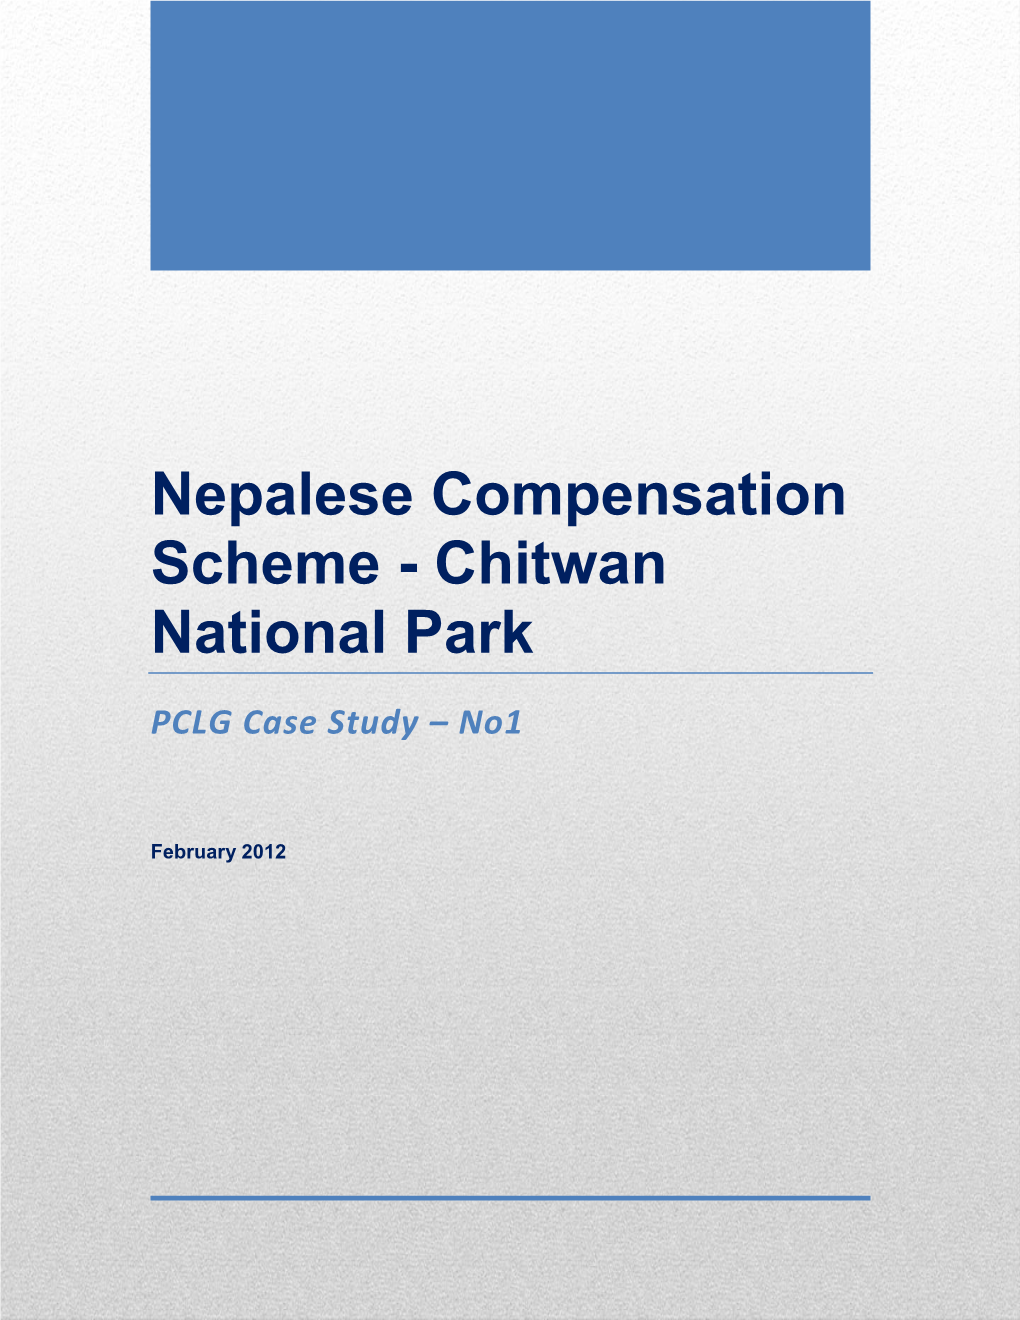 Nepalese Compensation Scheme - Chitwan National Park